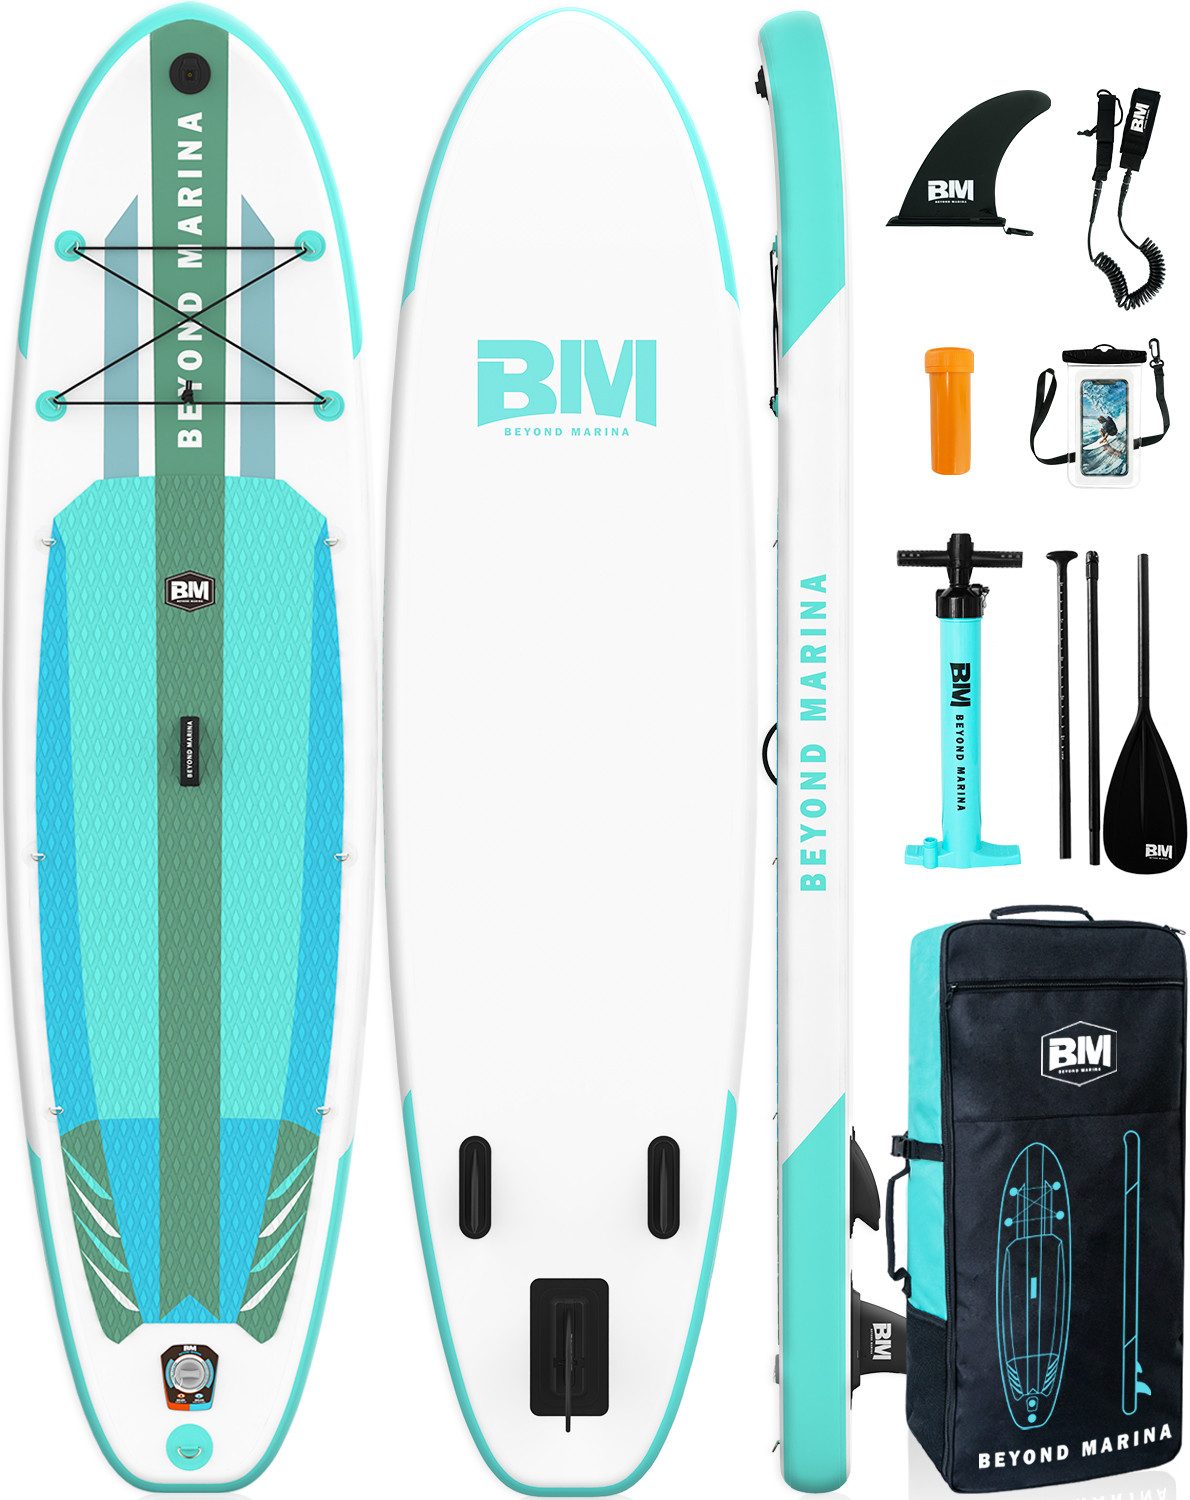 BEYOND MARINA Inflatable SUP-Board Aufblasbares Stehpaddelbrett, federleichtes Sup Board, Fusion Tech für Steifigkeit und Stabilität, Reisefreundlich